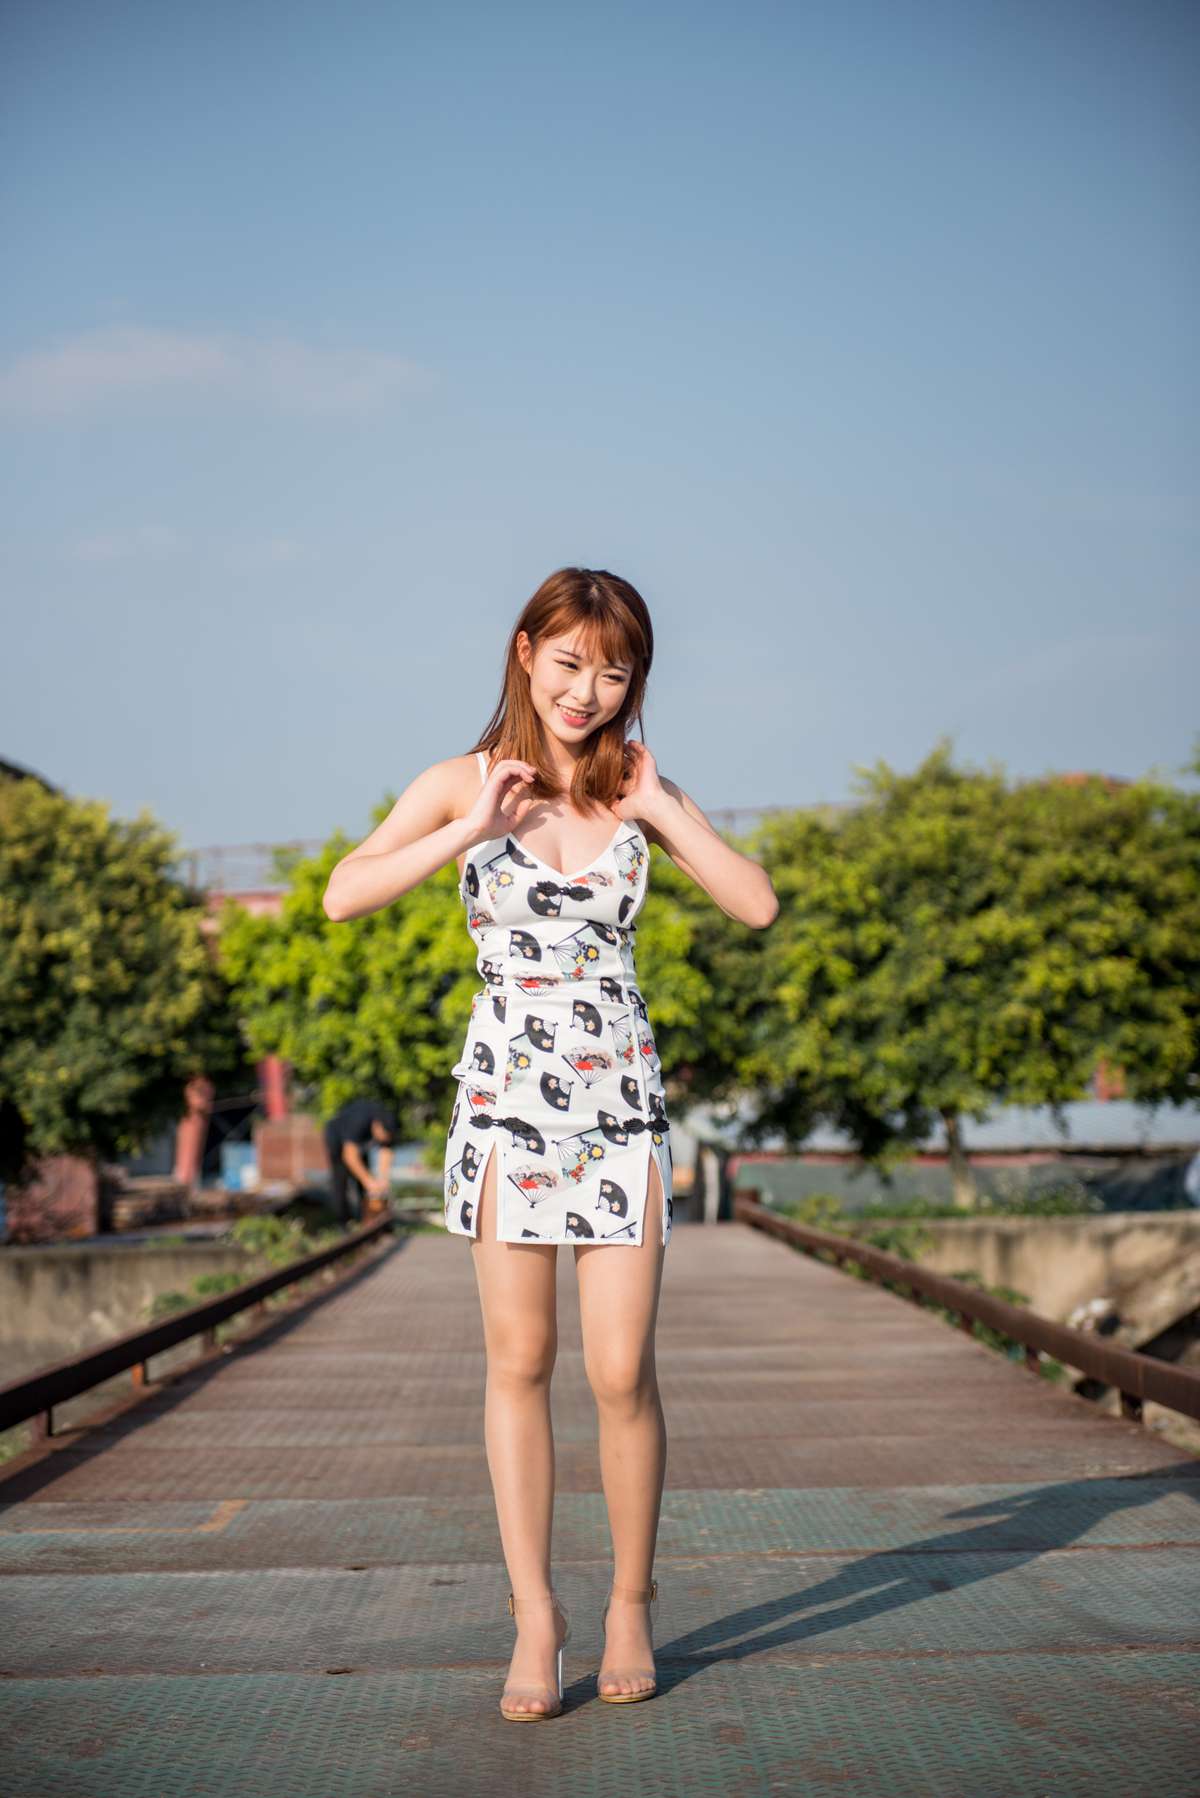 微博小解解@清水由乃 御风街拍 仅身裙肉丝 在现浏览第45张